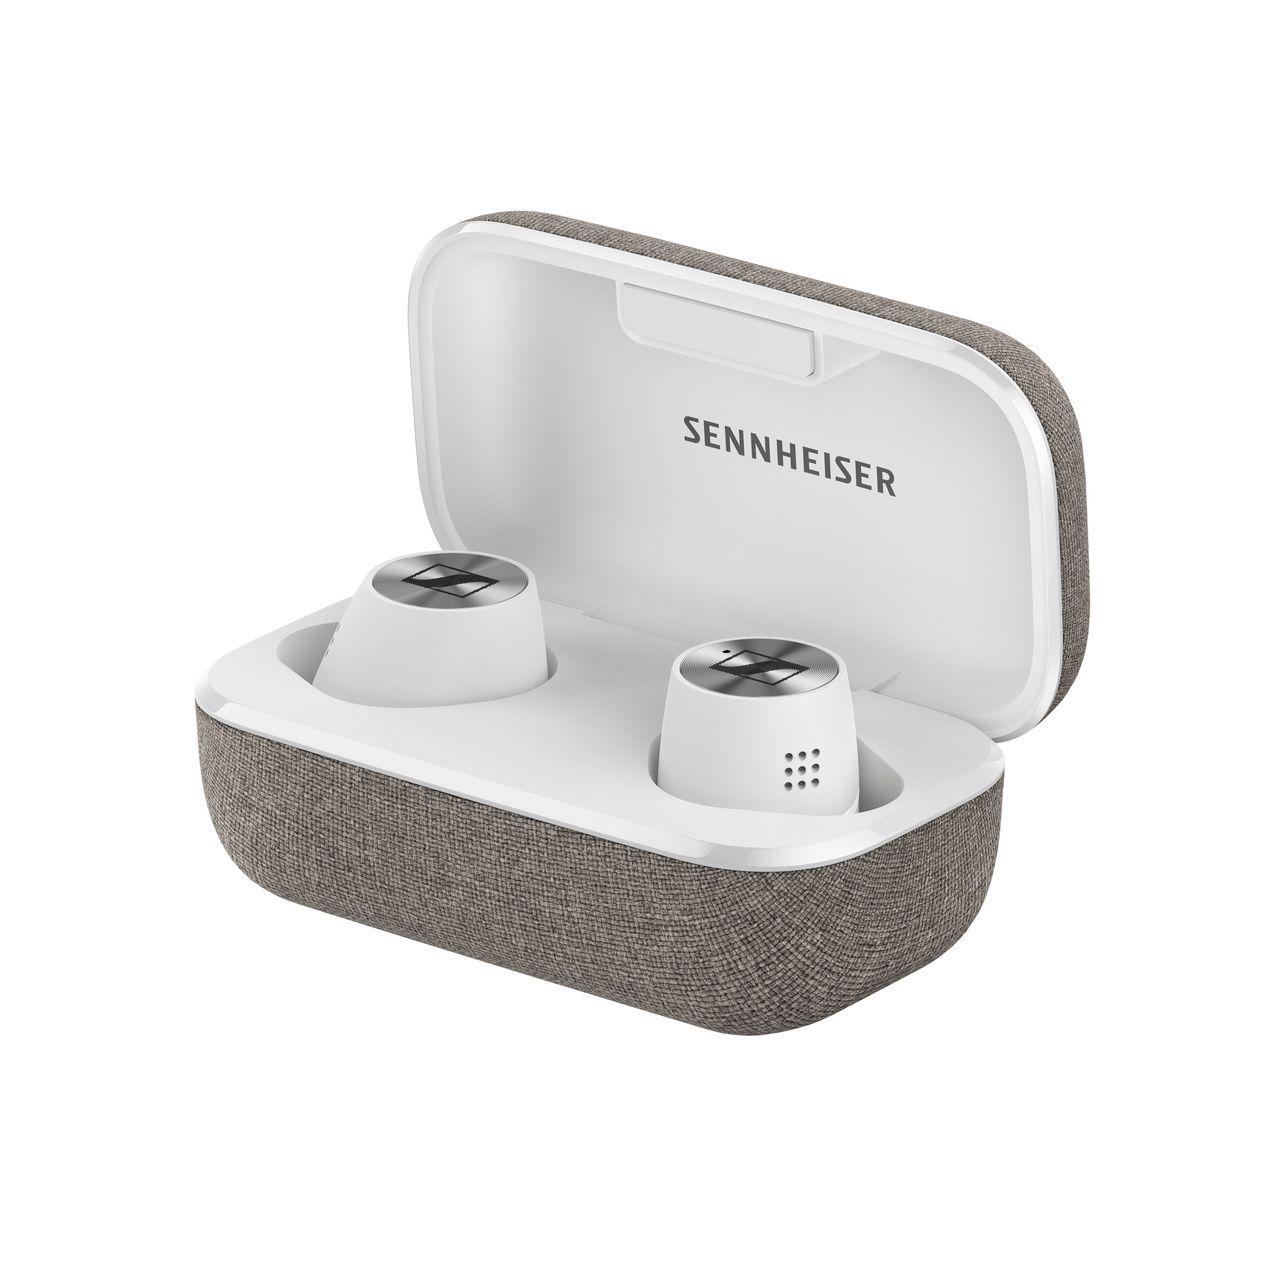 Sennheiser prezentuje słuchawki Momentum True Wireless 2